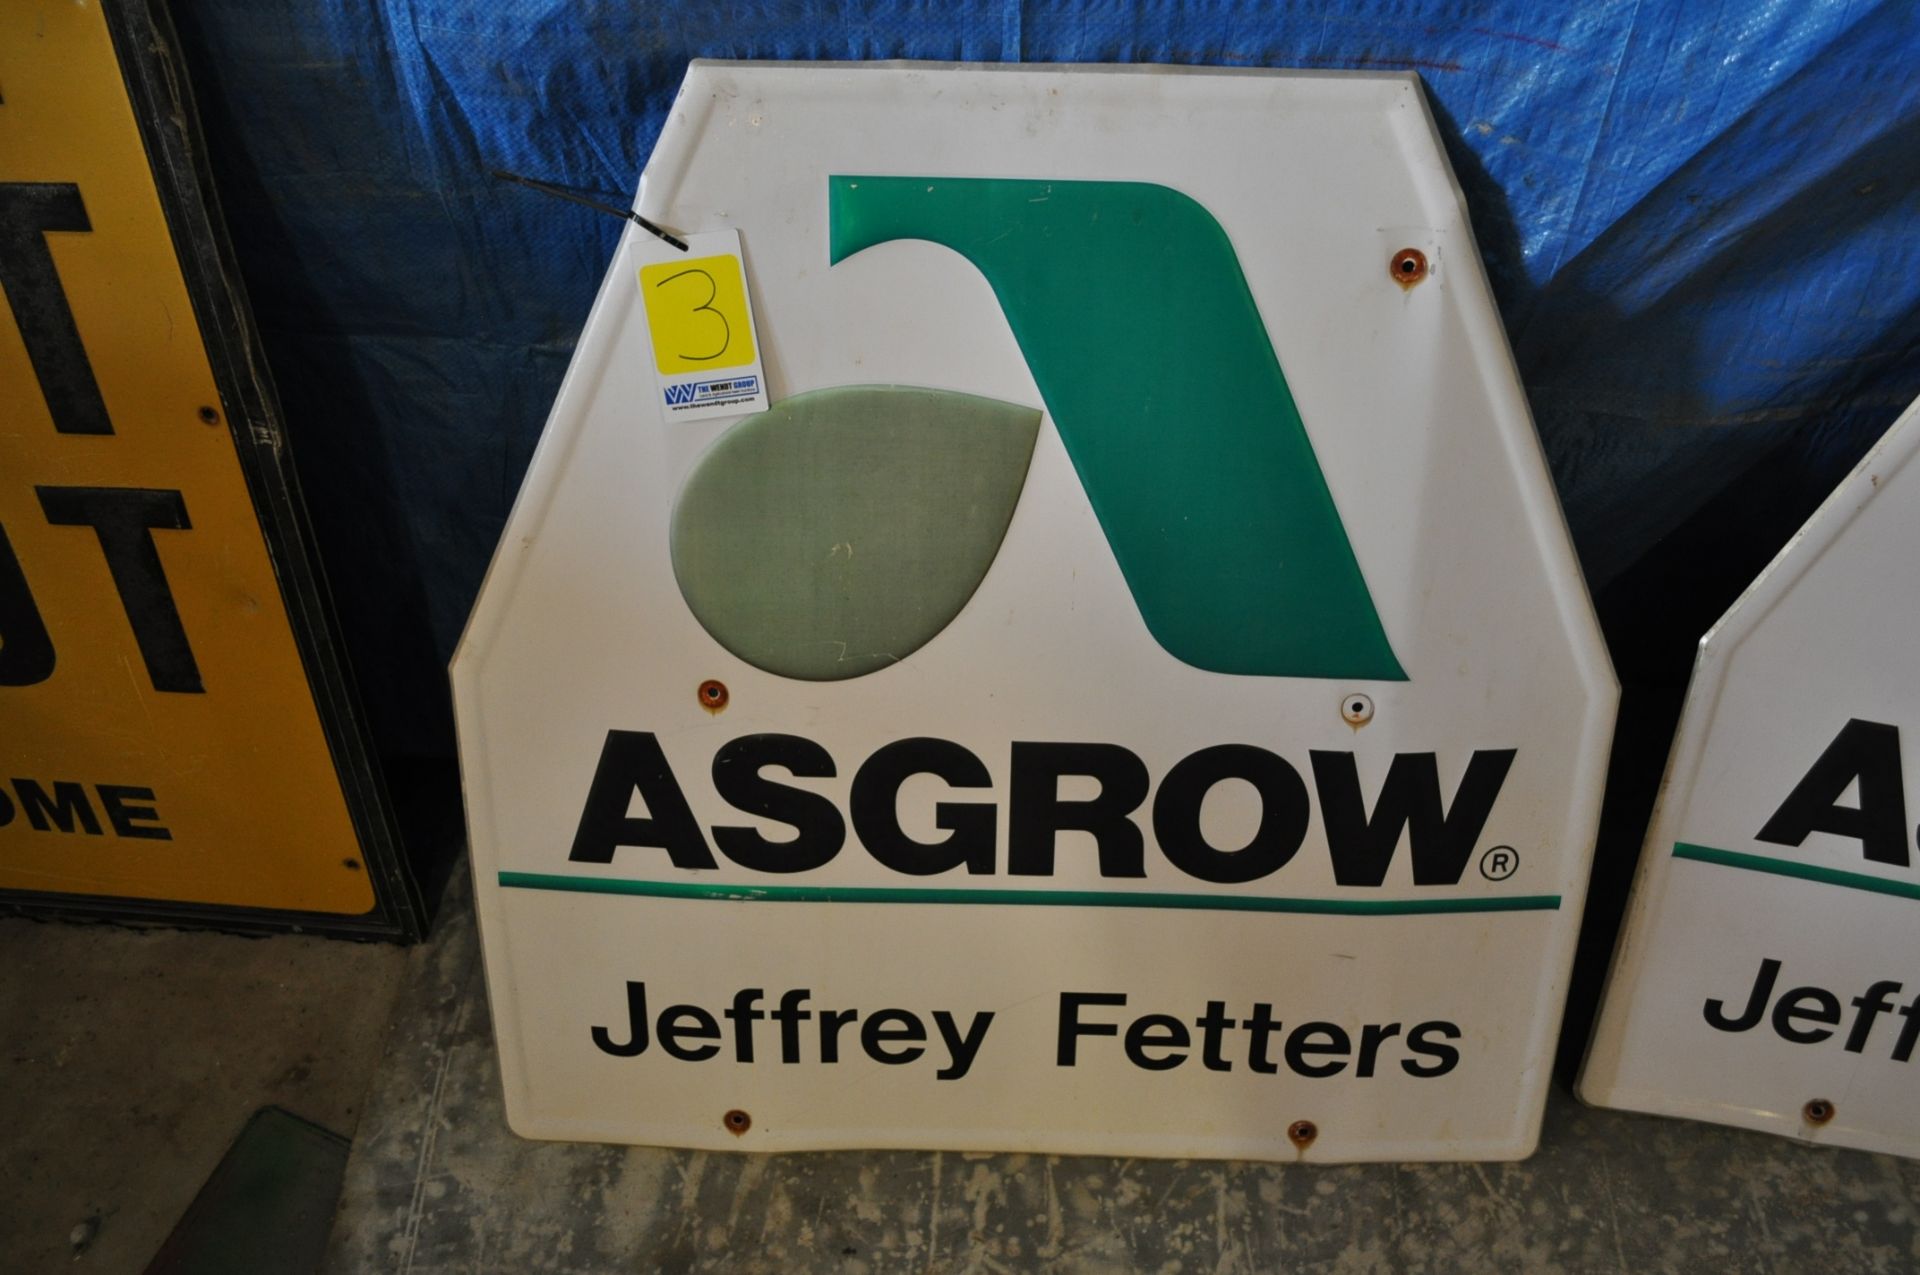 Metal Asgrow seed sign, Jeffery Fetters